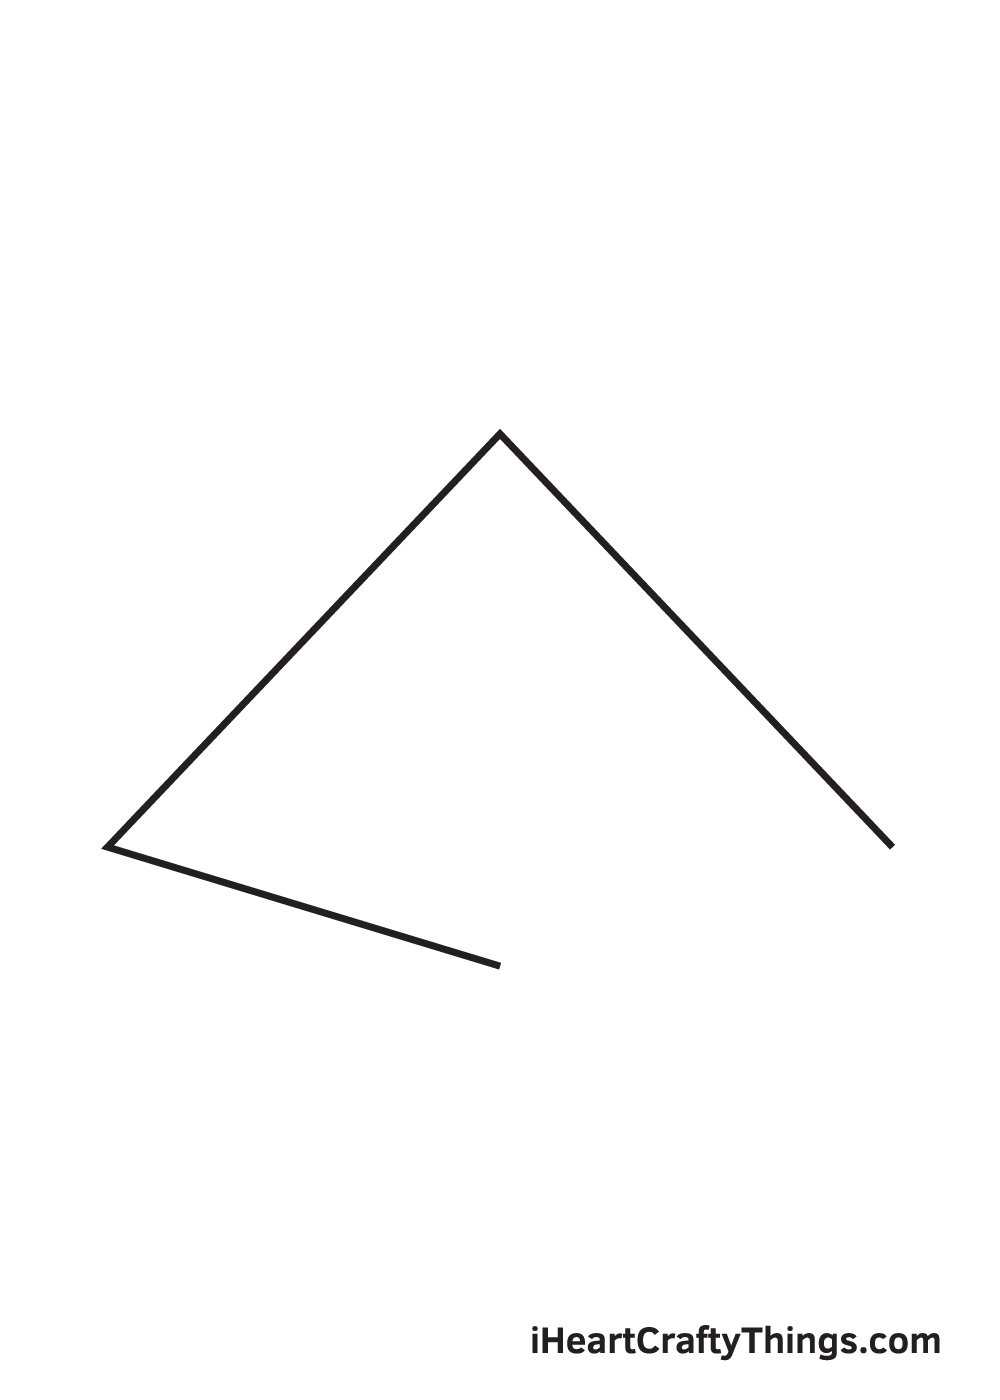 Pyramid DRAWING – STEP 3 - Hướng dẫn cách vẽ kim tự tháp đơn giản với 9 bước